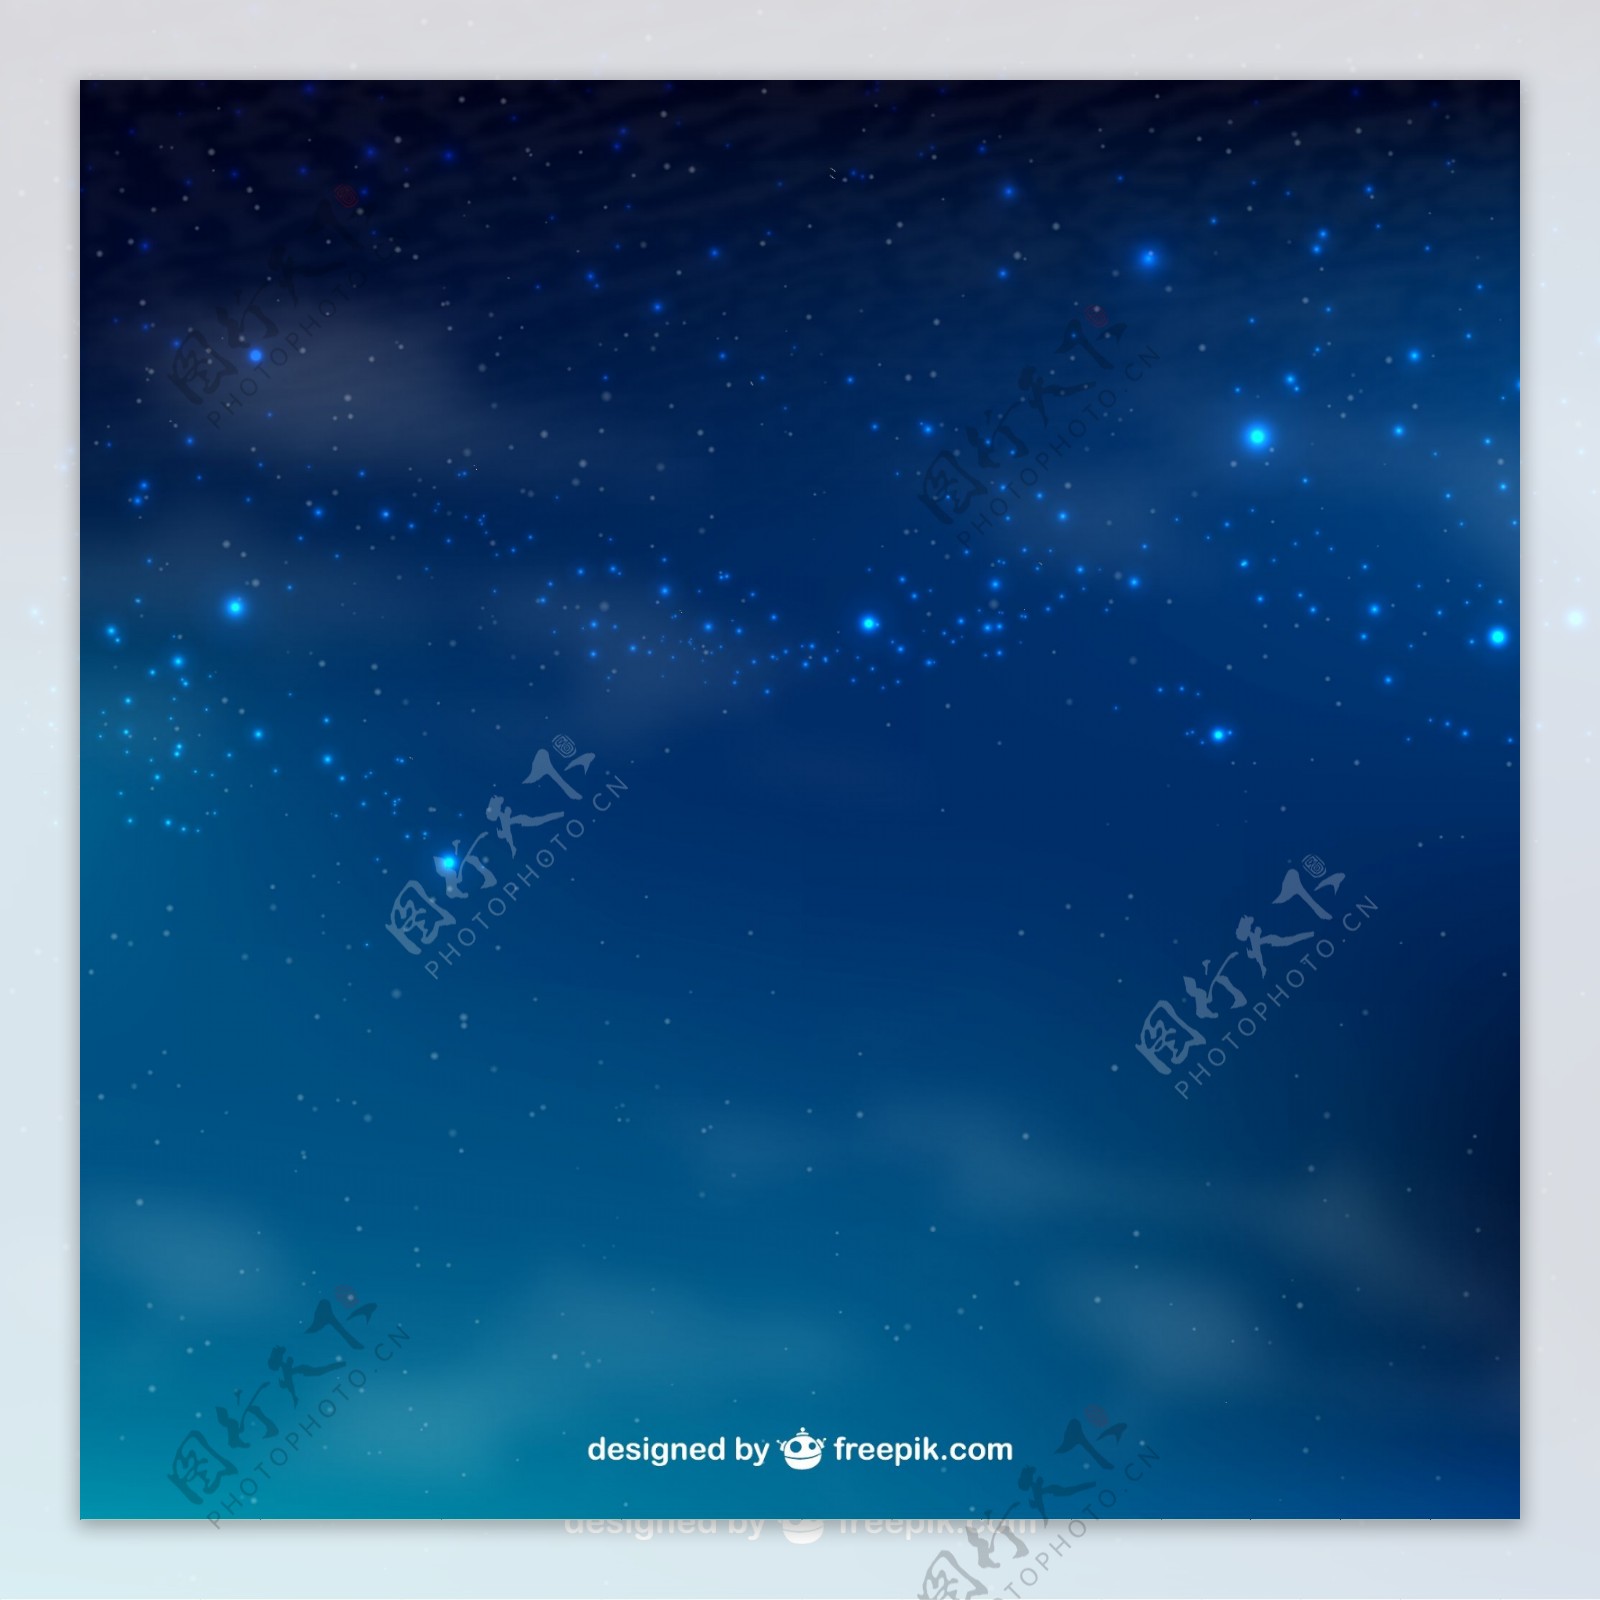 蓝色星空背景矢量素材图片